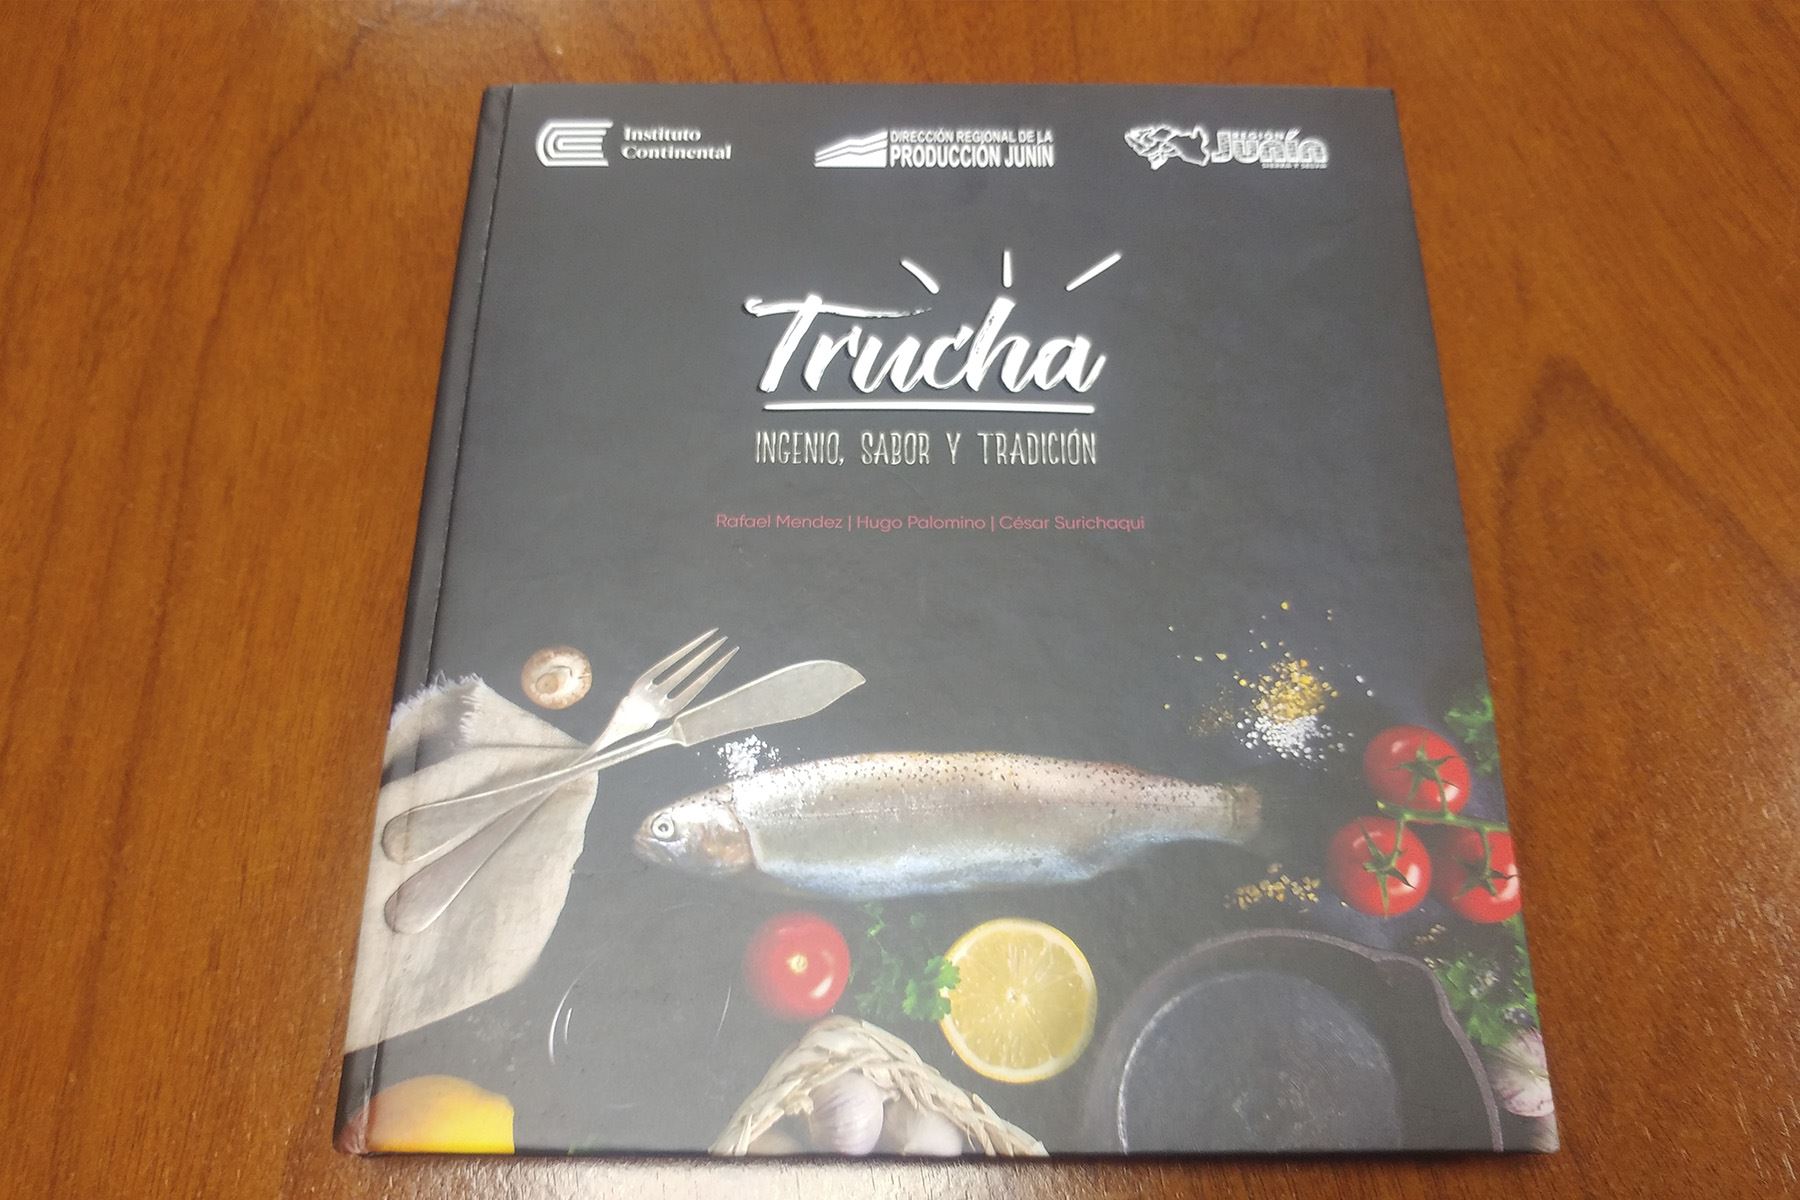 El libro "Trucha: Ingenio, sabor y tradición" fue presentado el último viernes en la Fil Lima 2018.